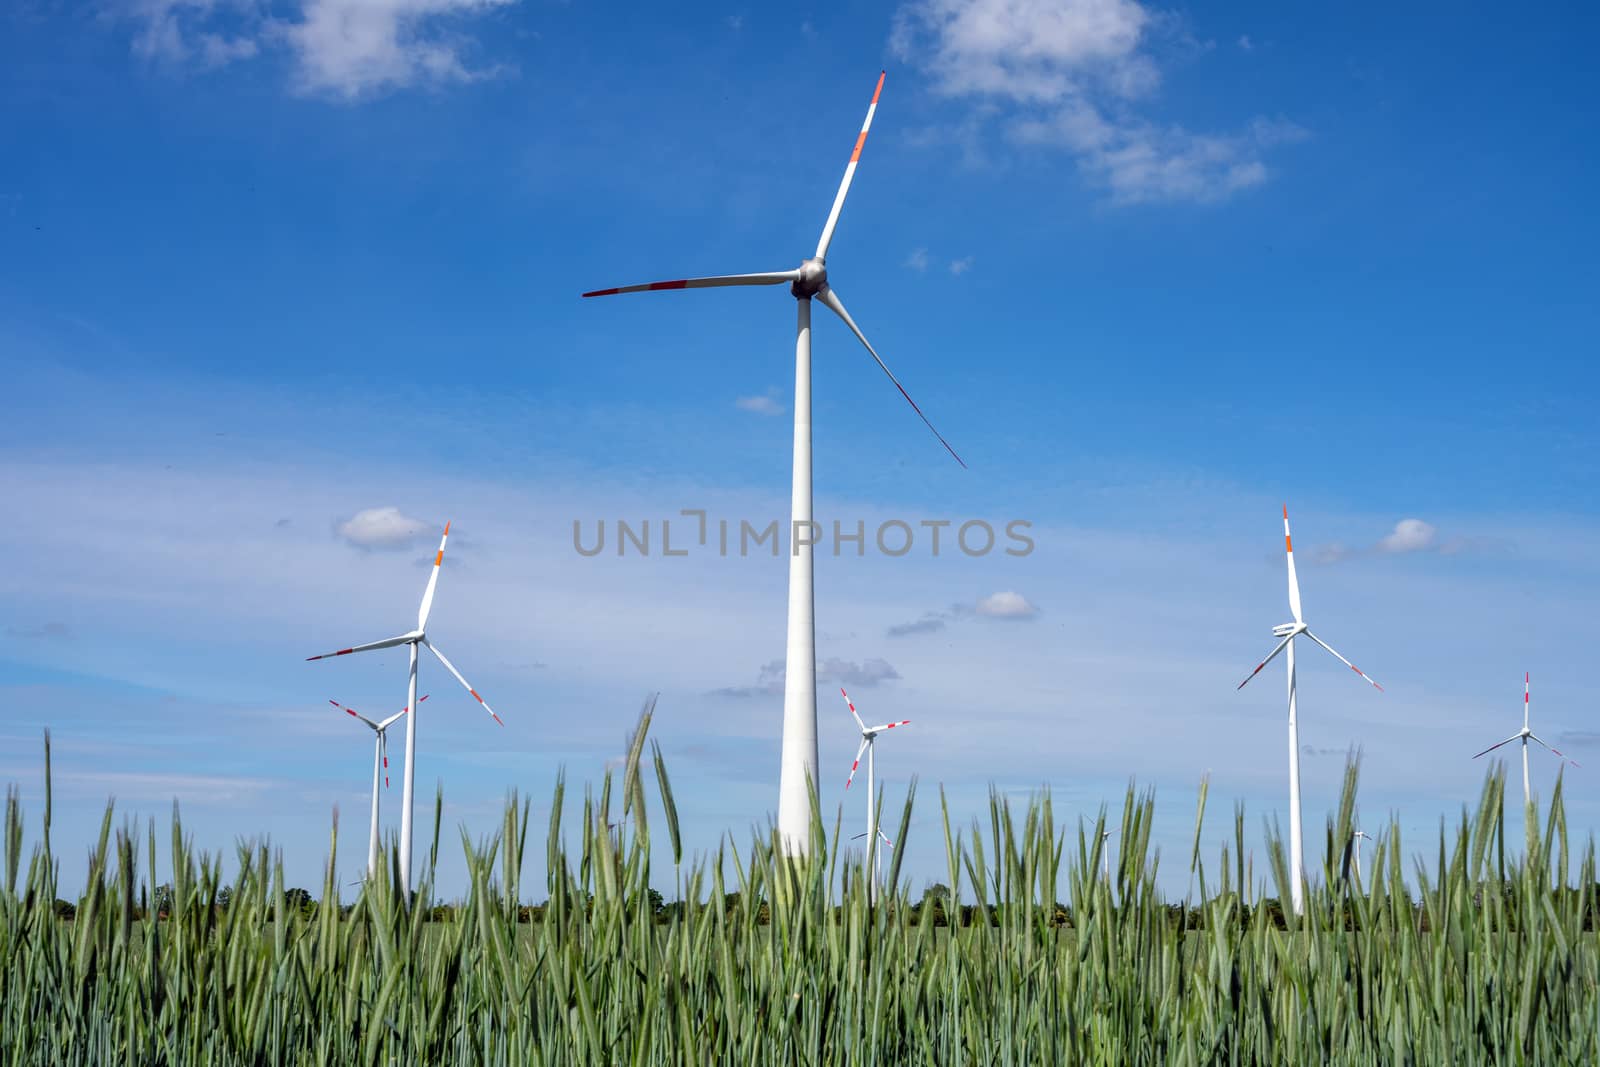 Wind turbines in a cornfield seen in Germany